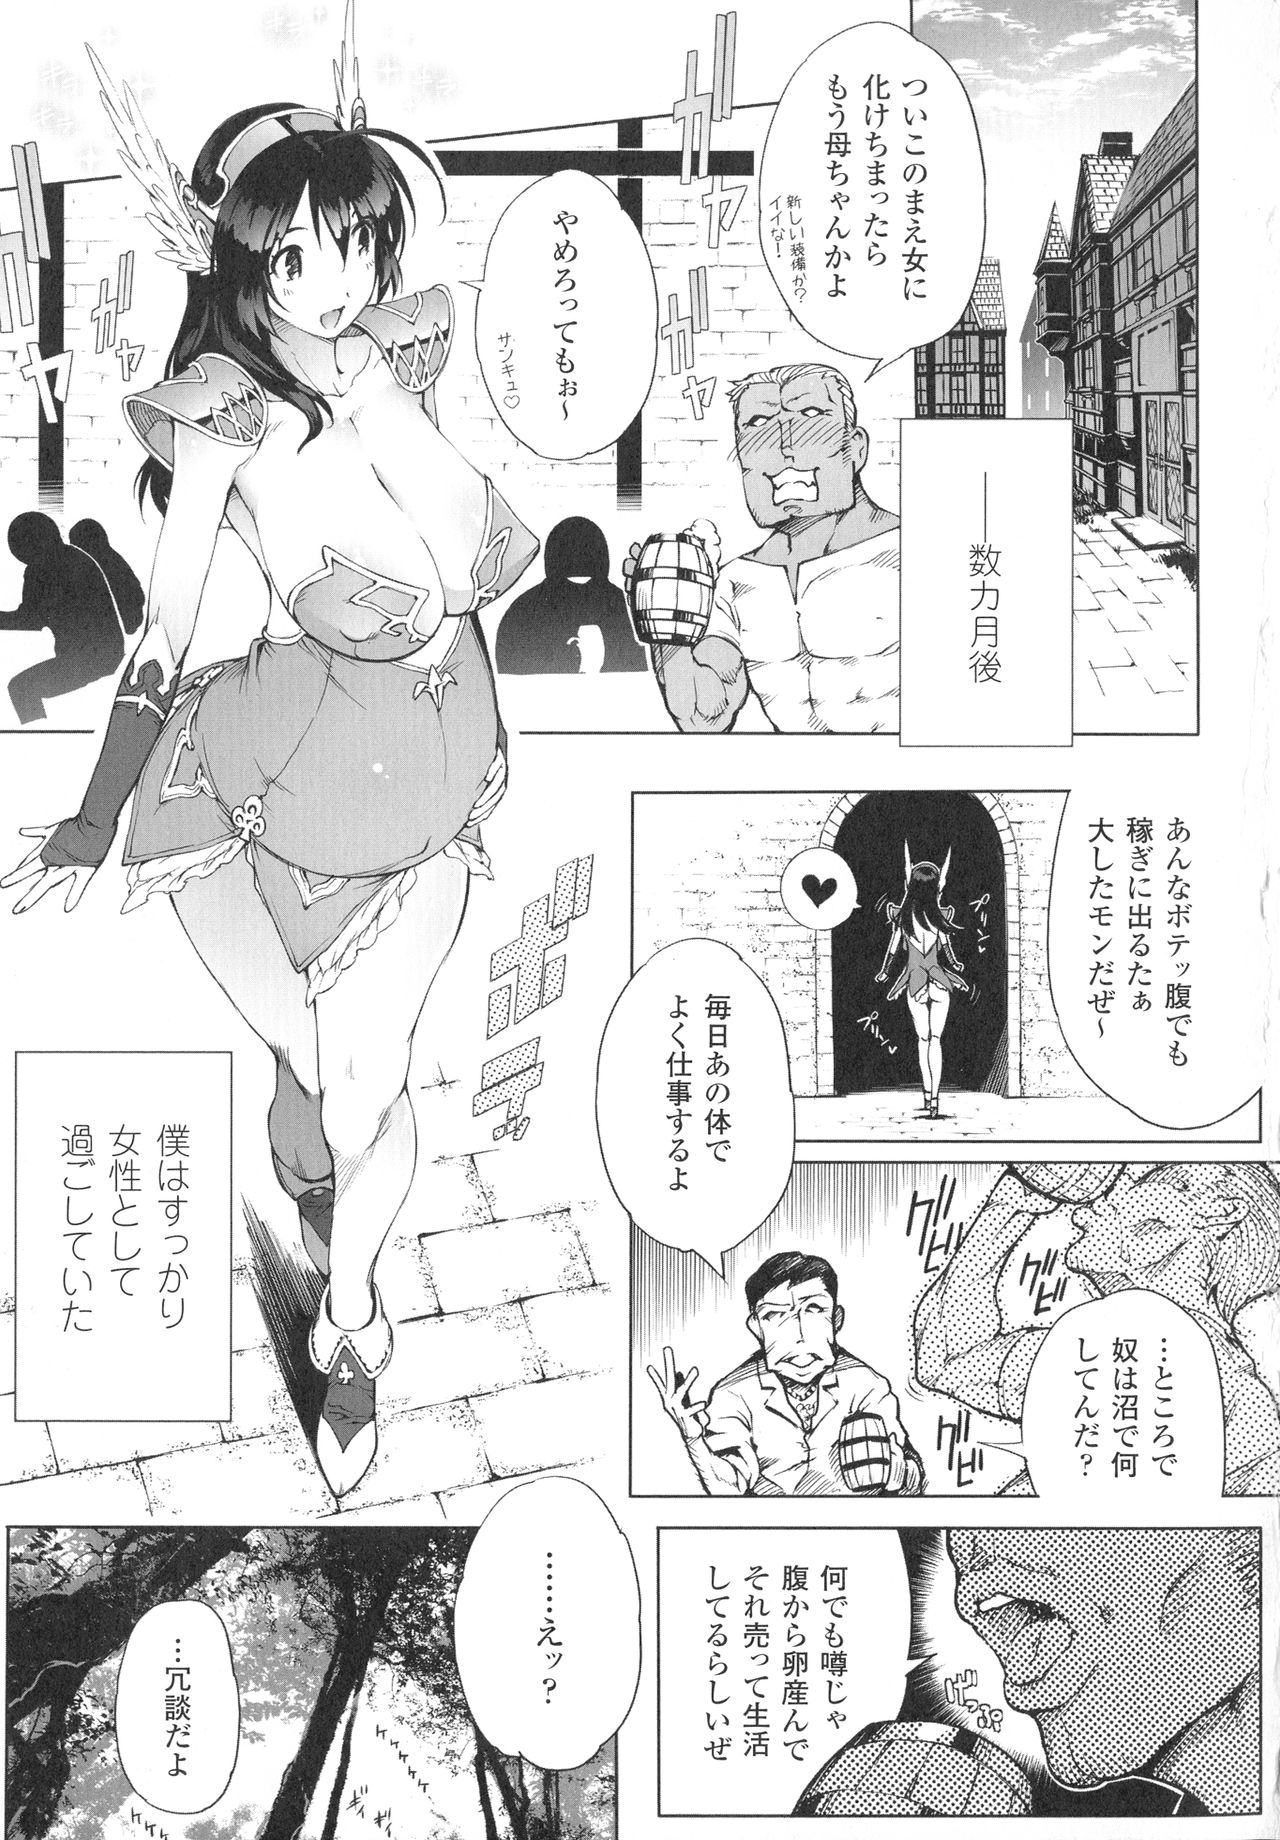 [144] In Fureishon Heroine Zenin Kairaku End [いちよんよん] 淫フレーション ヒロイン全員快楽エンド